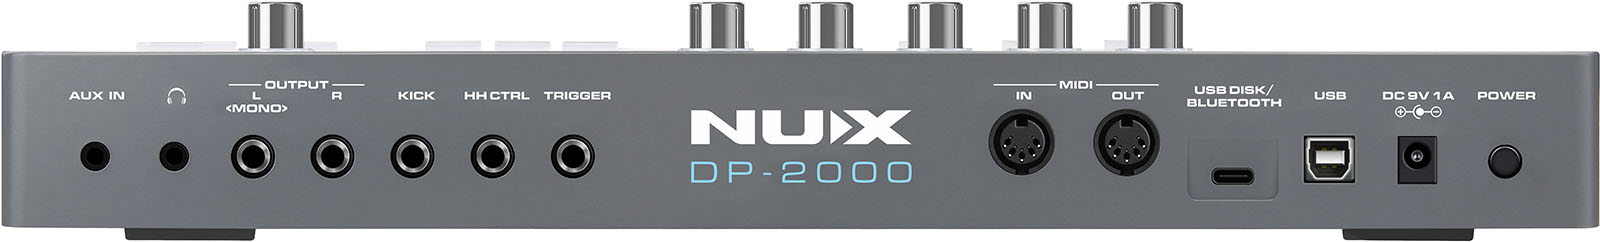 Nux Dp-2000 Multi Pad - Multi pad para batería electrónica - Variation 1